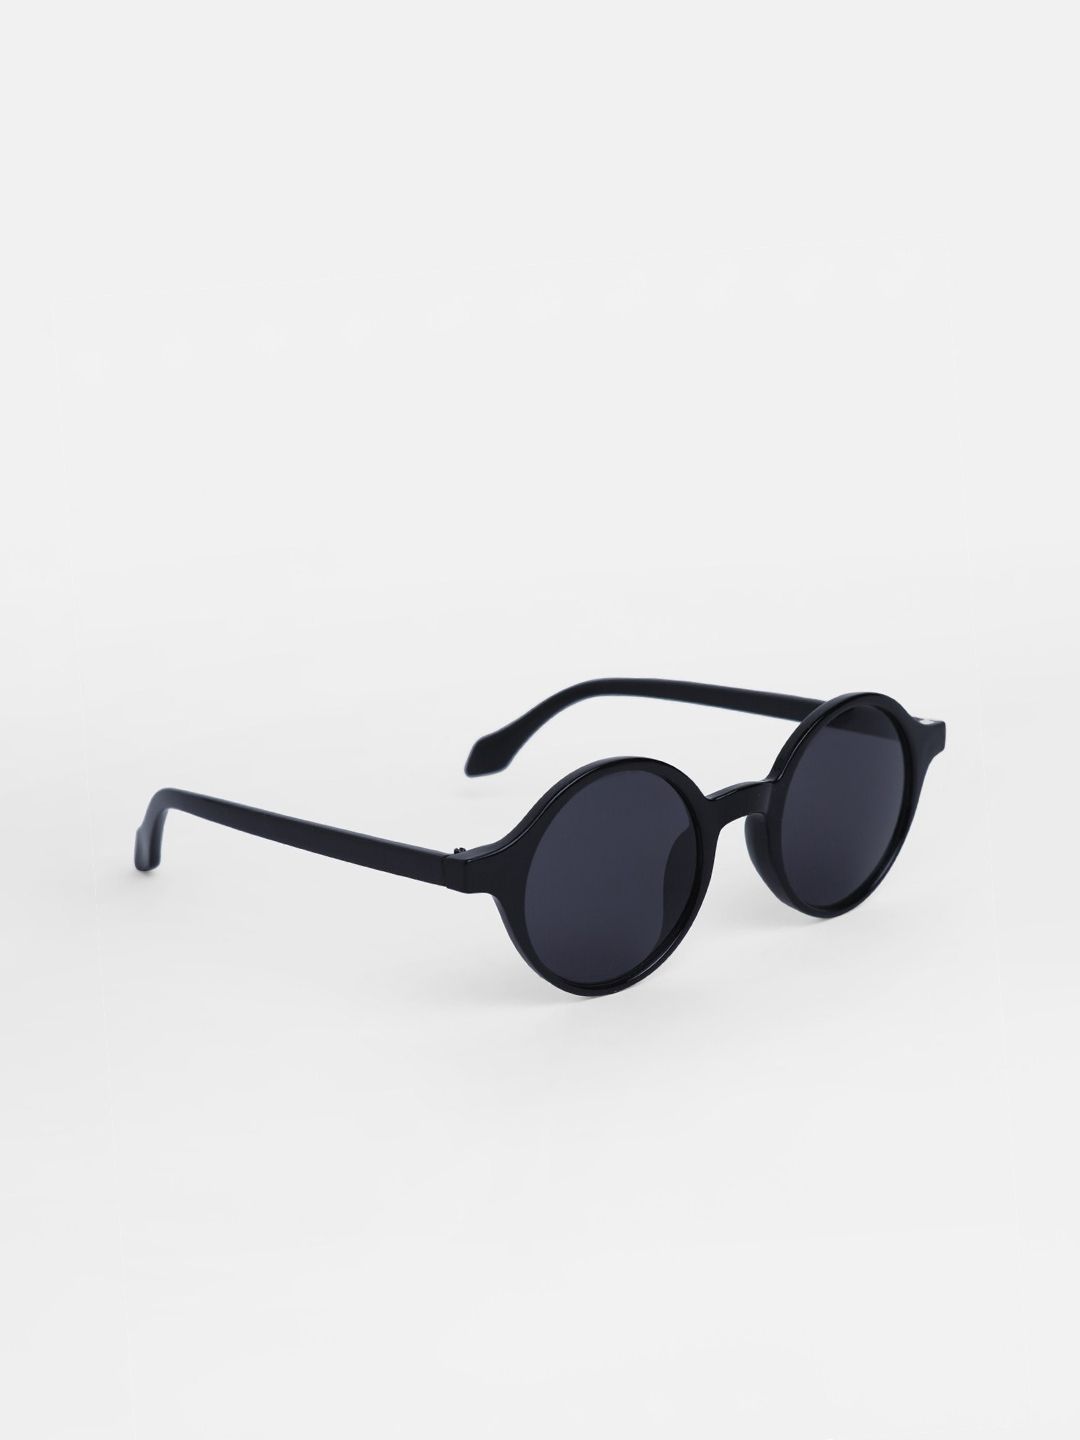 Vero Moda Women Black Lens & Black Round Sunglasses Price in India